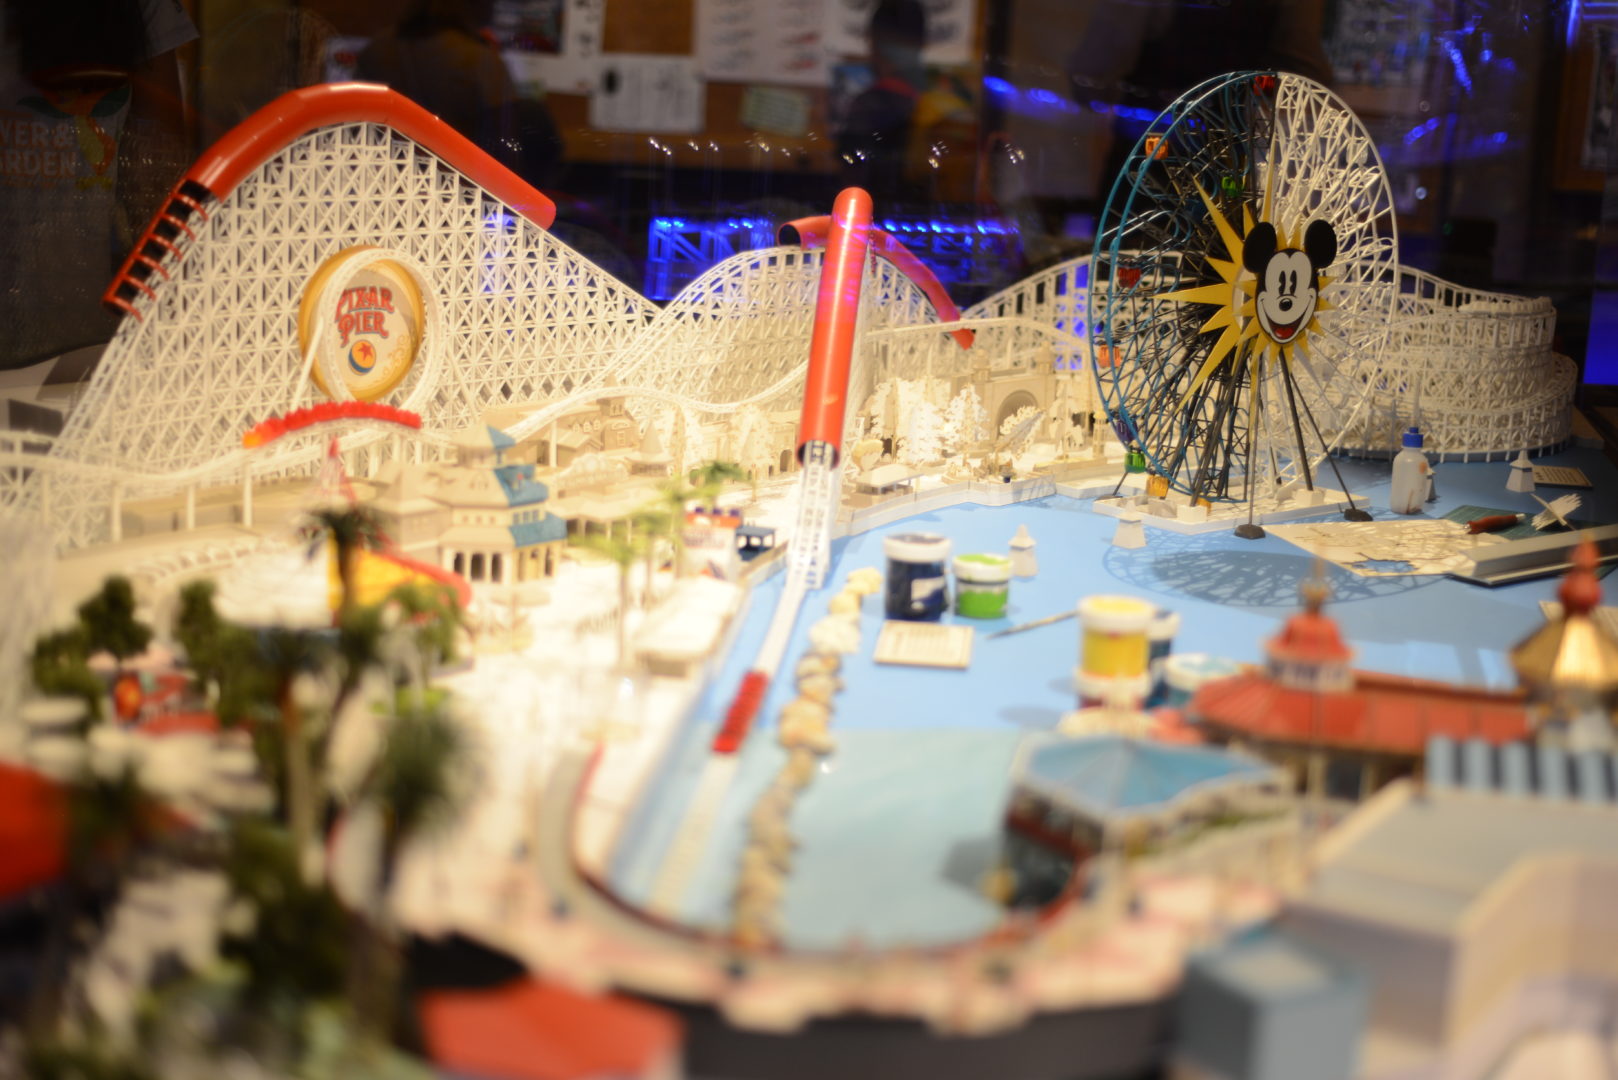 Pixar Pier Concept Model for Pixar Fest at Disneyland's California Adventure